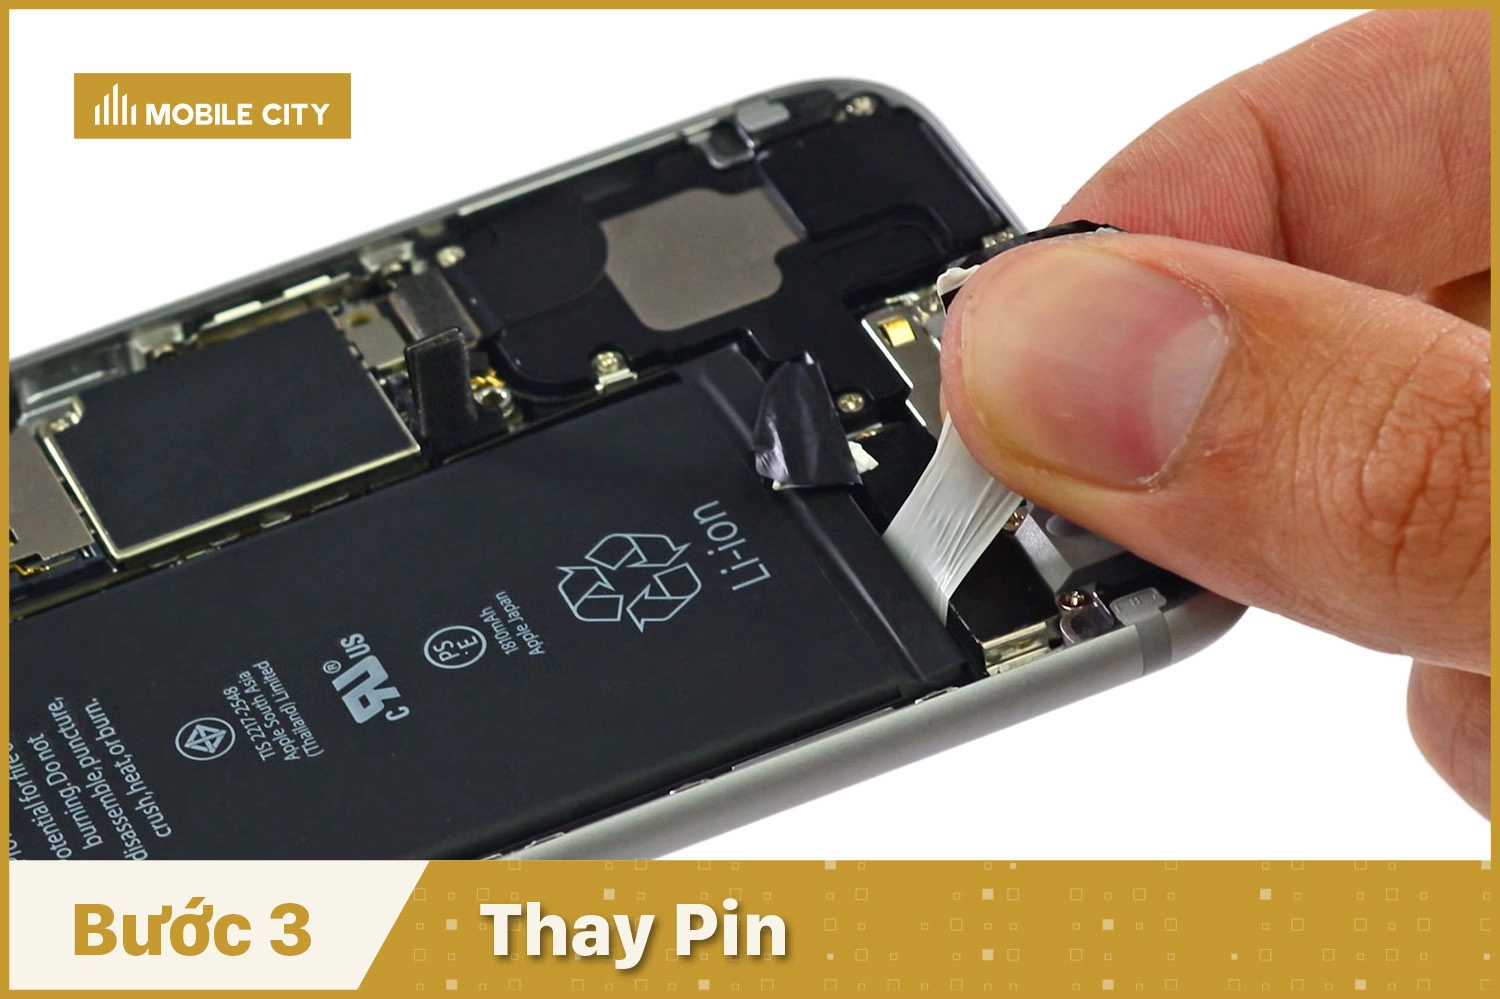 Thay Pin iPhone 6, thay Pin